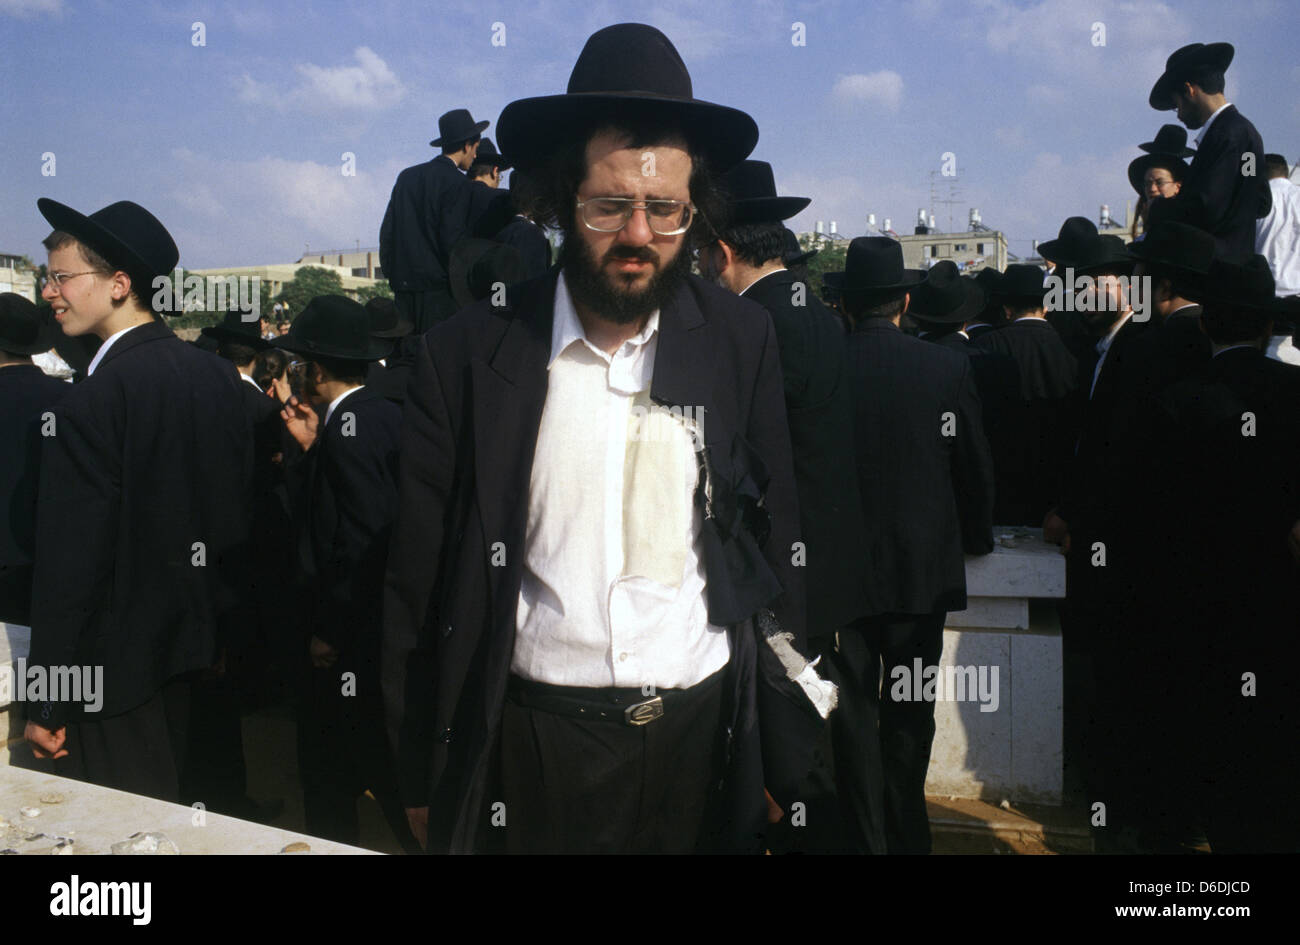 Ebreo ultra ortodosso con vestiti strappati come gesto di lutto ad un funerale Rabbi nella città di Bnei Brak o bene Beraq un centro del giudaismo Haredi in Israele Foto Stock